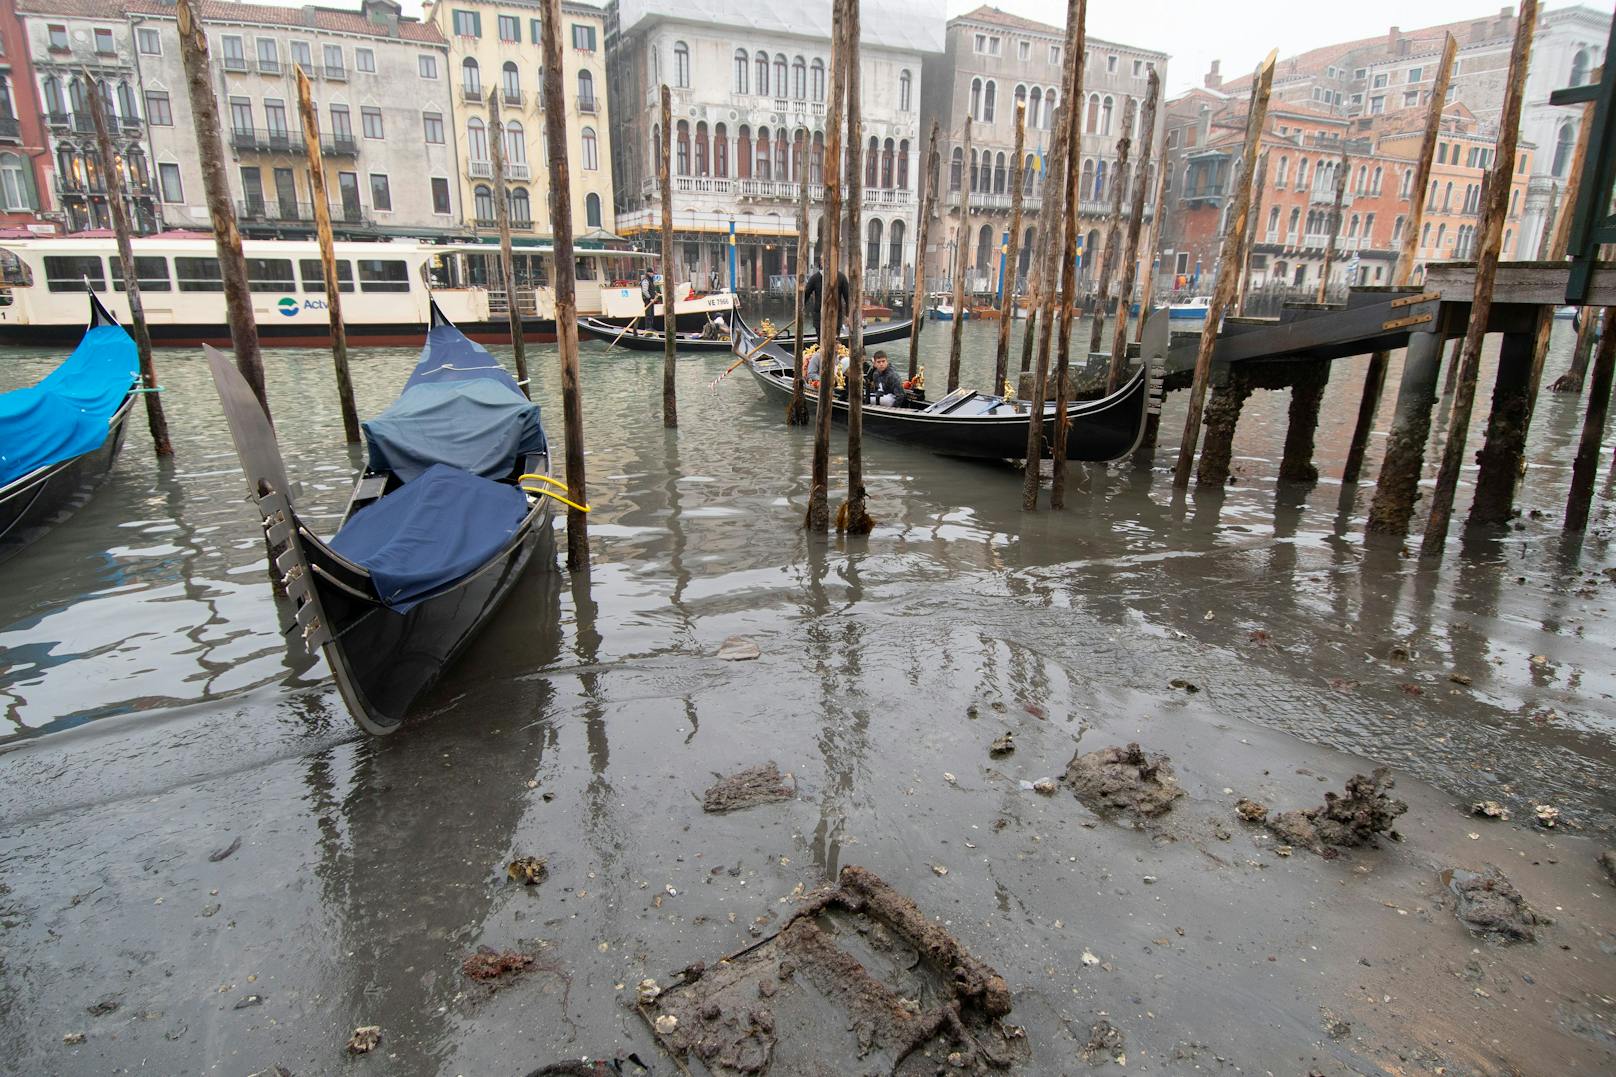 Bilder aus Venedig zeigen, dass ganze Kanäle ausgetrocknet sind.